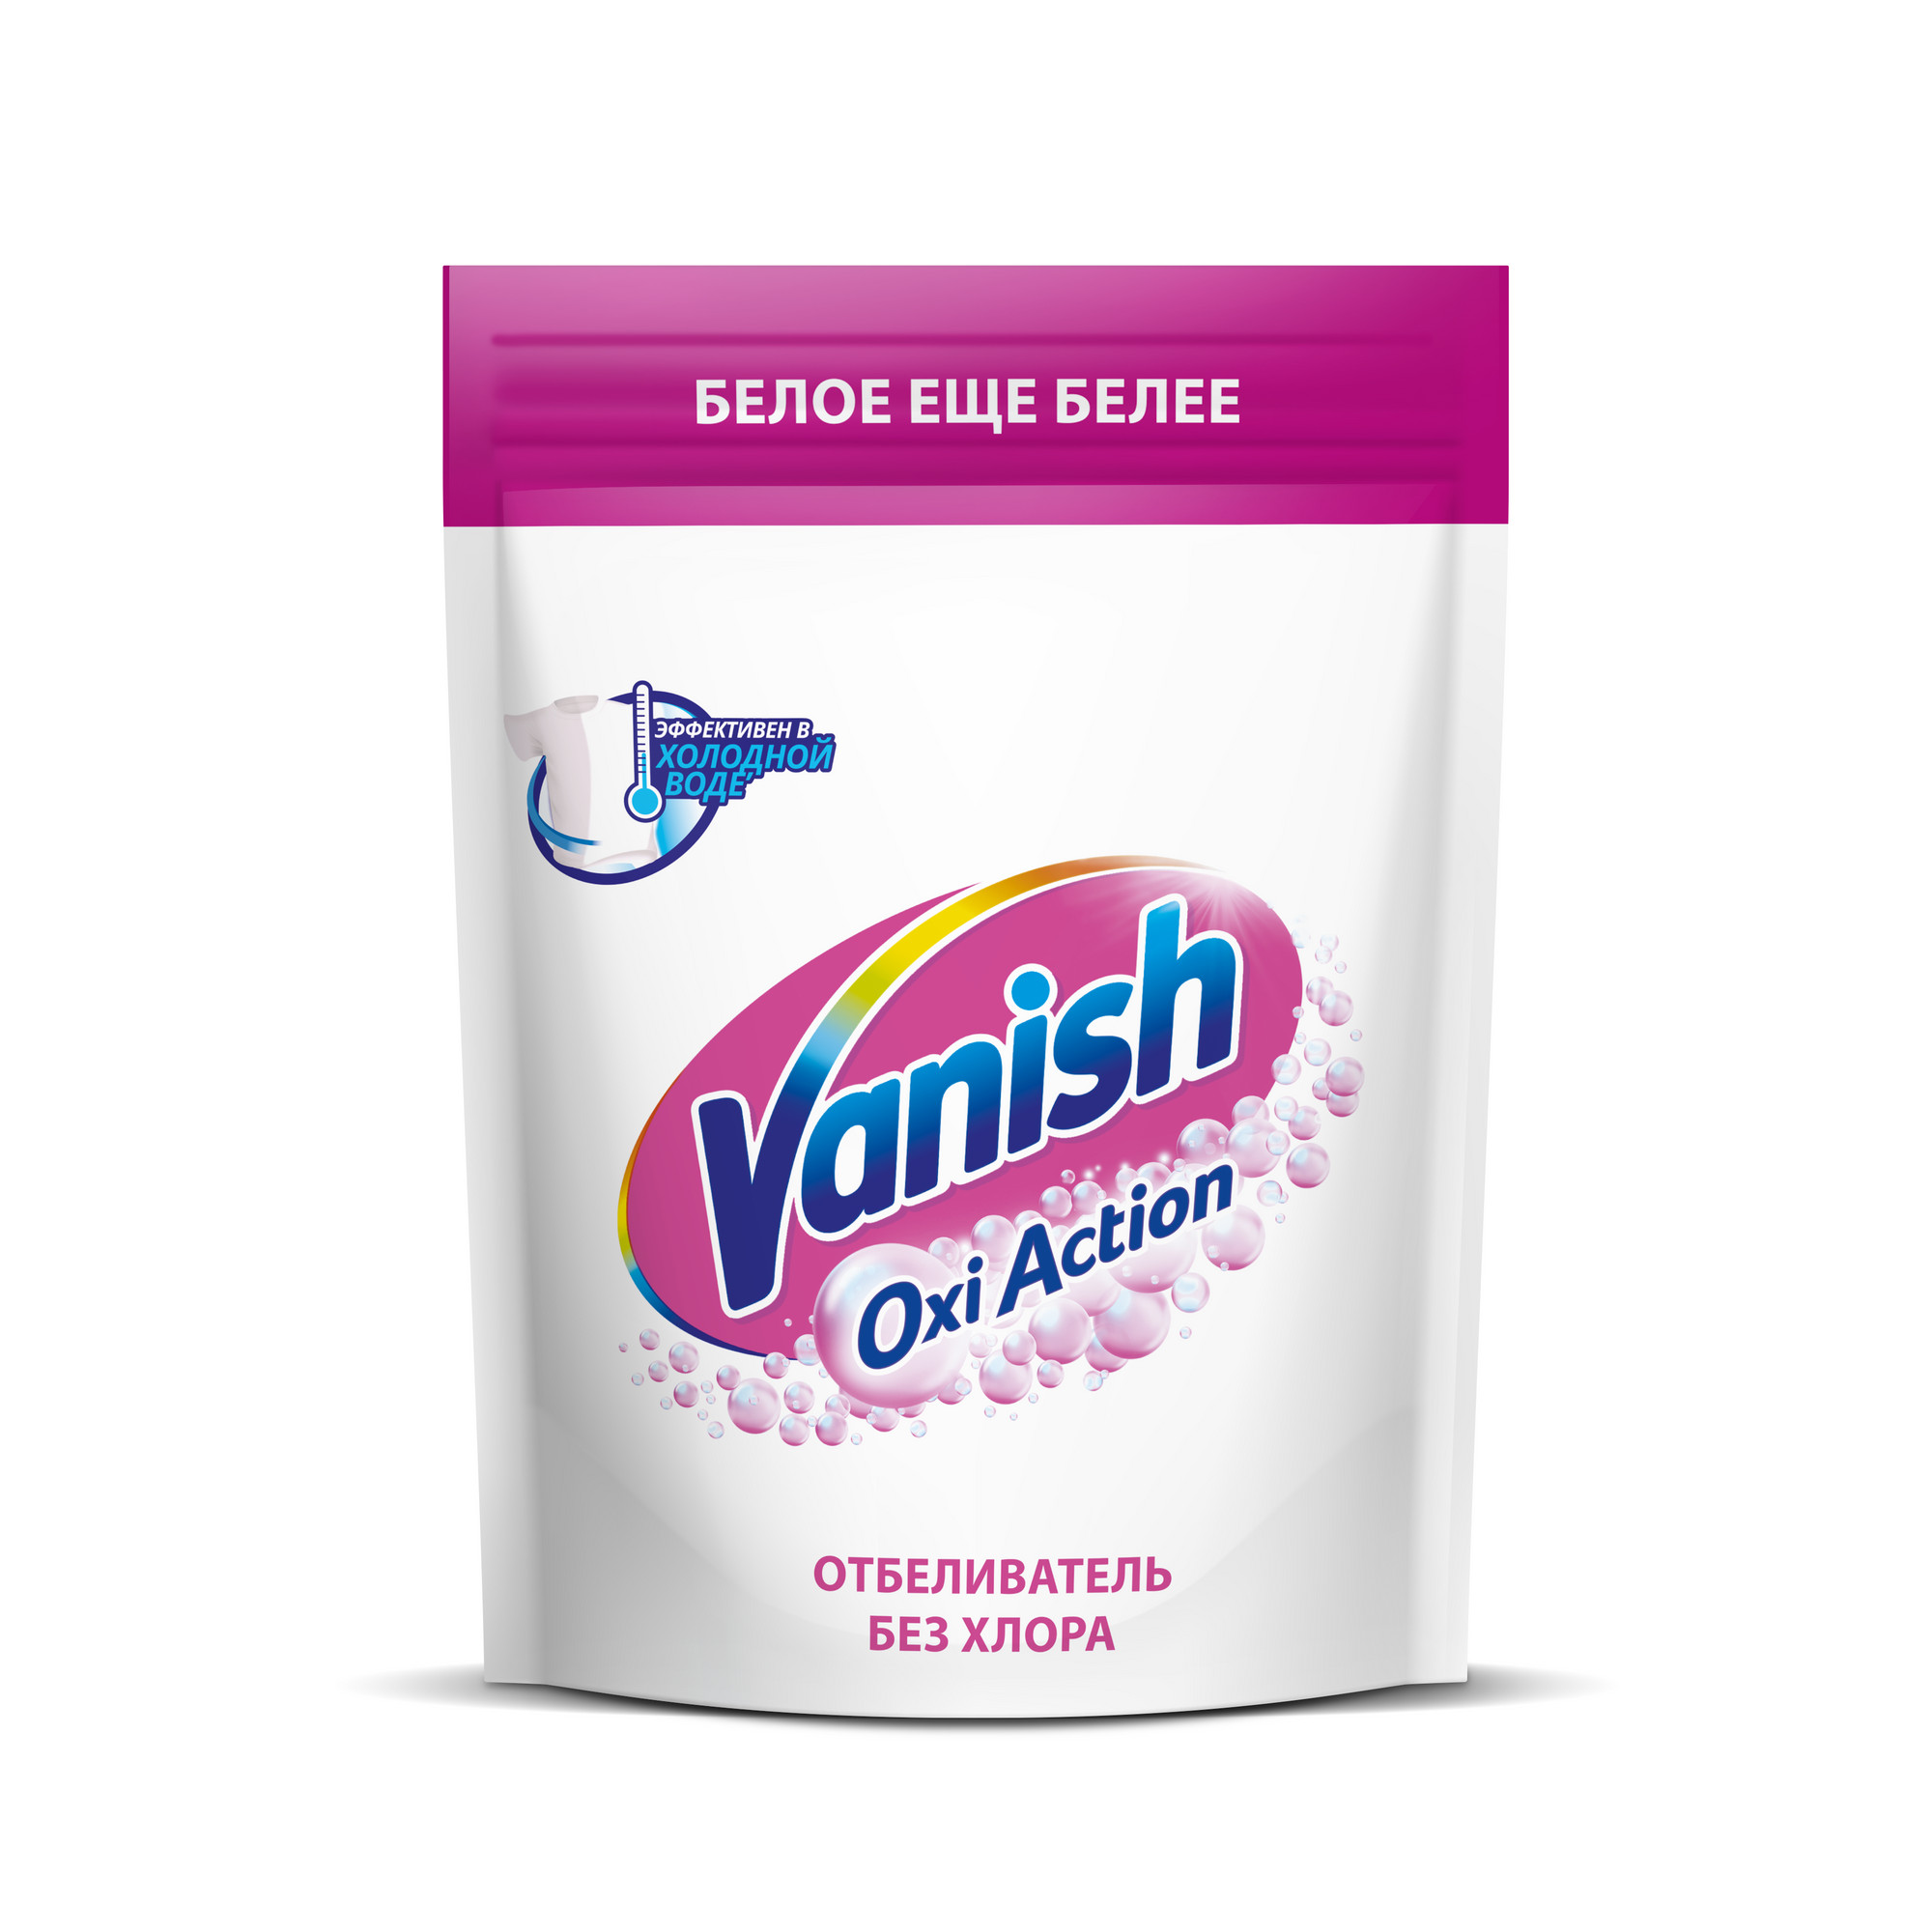 Пятновыводитель Vanish Oxi Action Кристальная белизна для тканей порошкообразный 500 г пятновыводитель vanish oxi action кристальная белизна для тканей порошкообразный 500 г